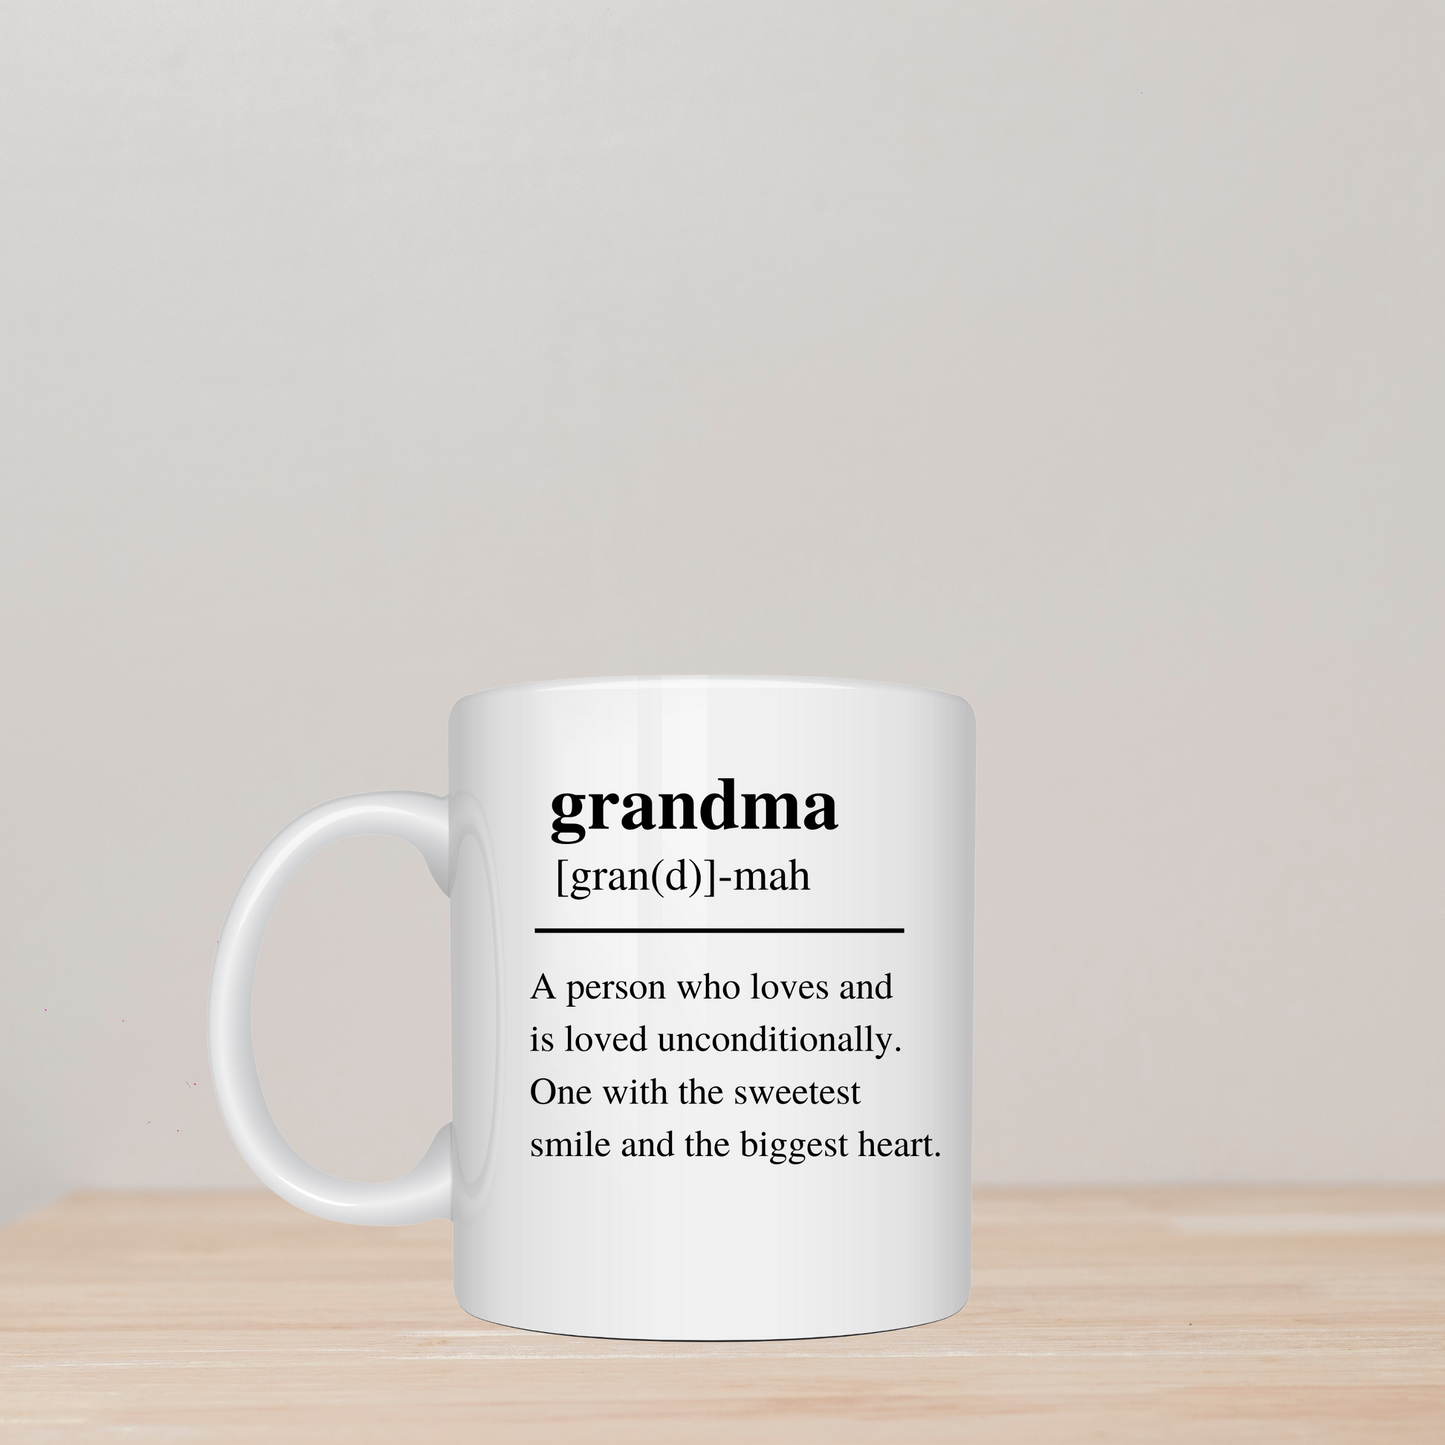 Grandma Dictionary Definition Mug